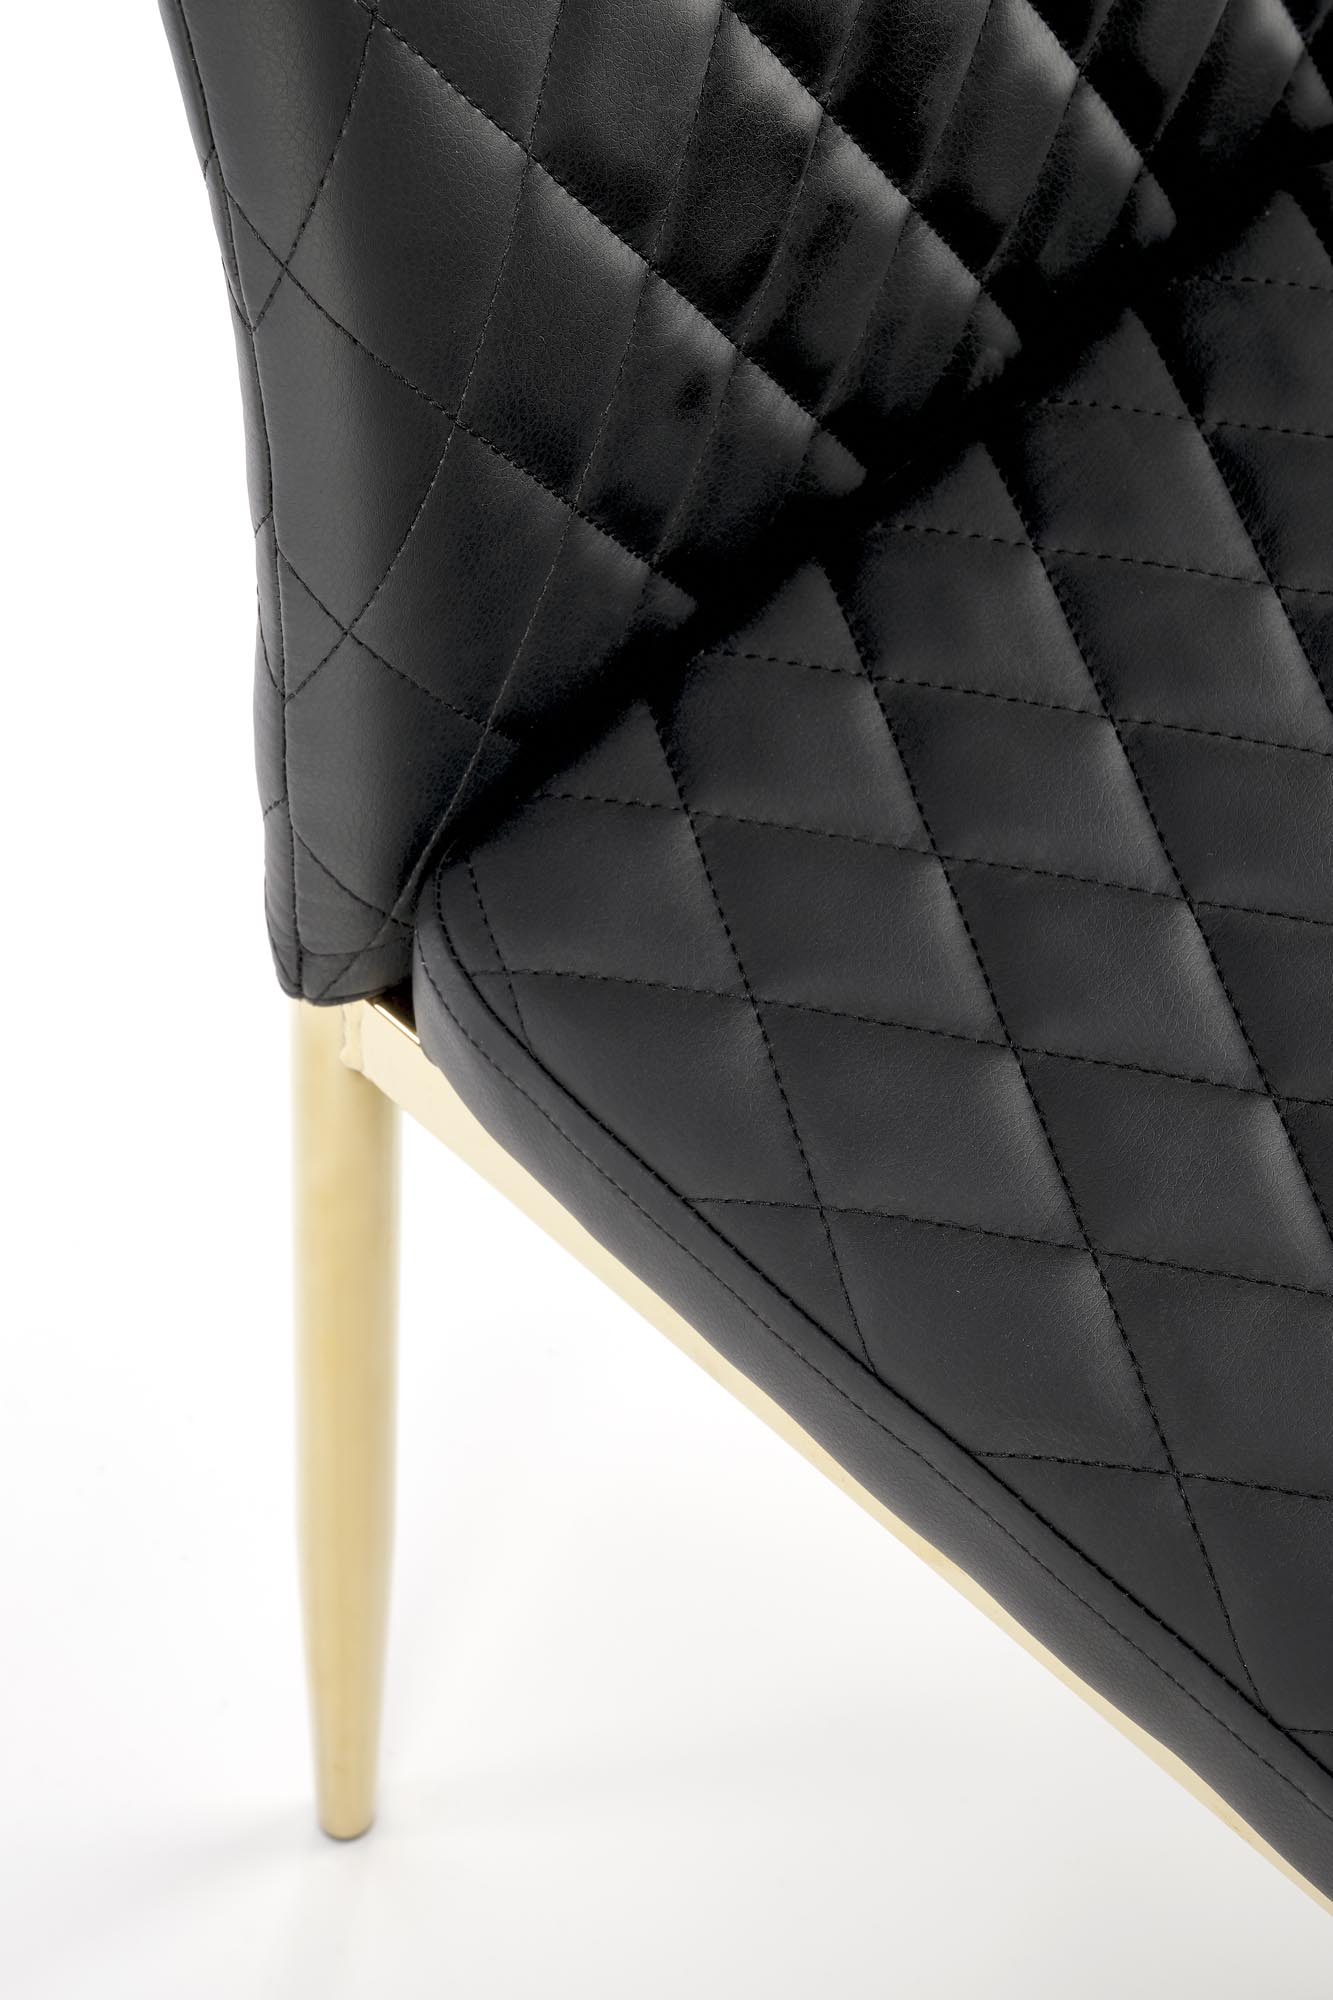 Krzesło tapicerowane K501 - czarny / złoty krzesło tapicerowane k501 - czarny / złoty